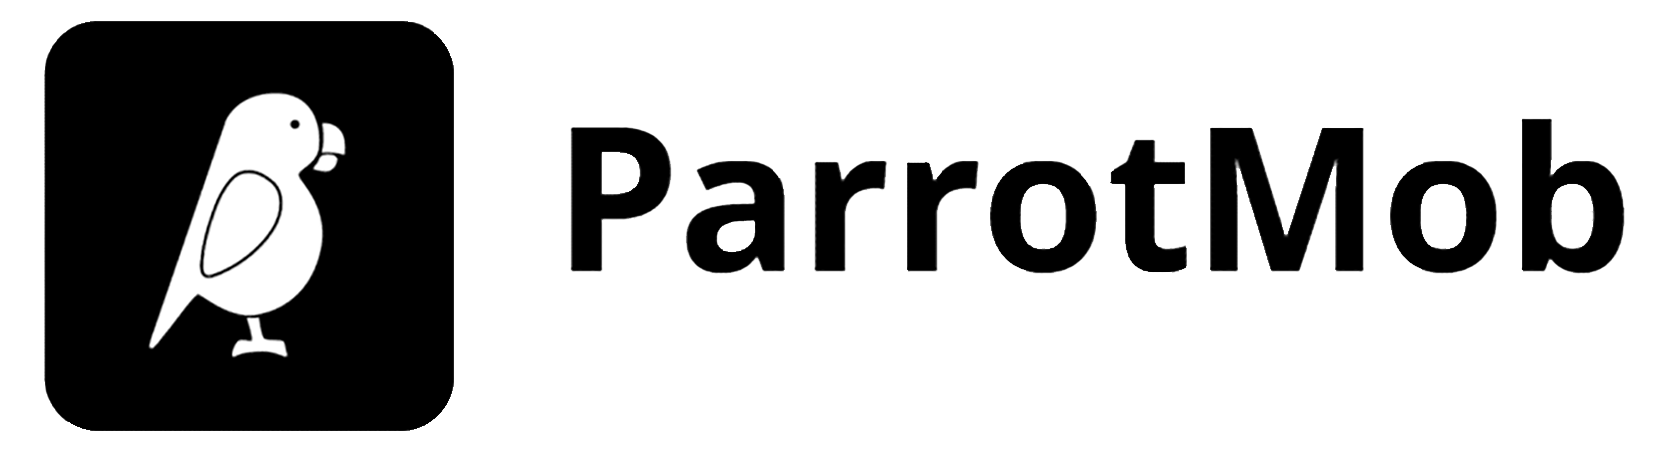 Parrotmob